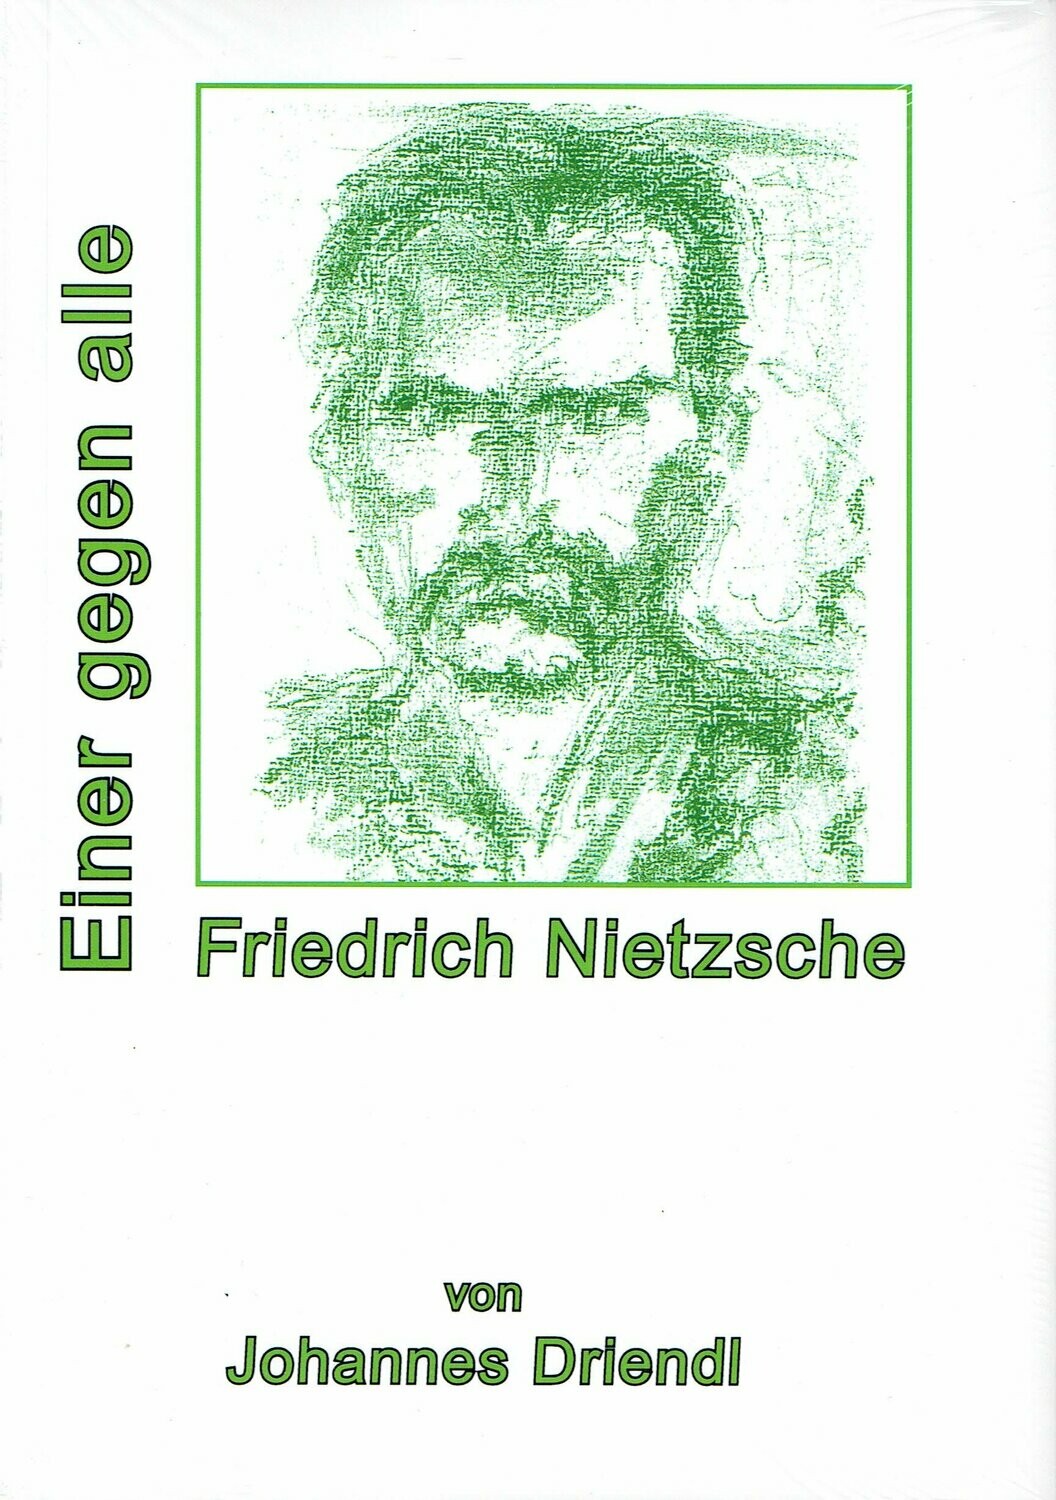 Johannes Driendl über
Friedrich Nietzsche
Einer gegen alle